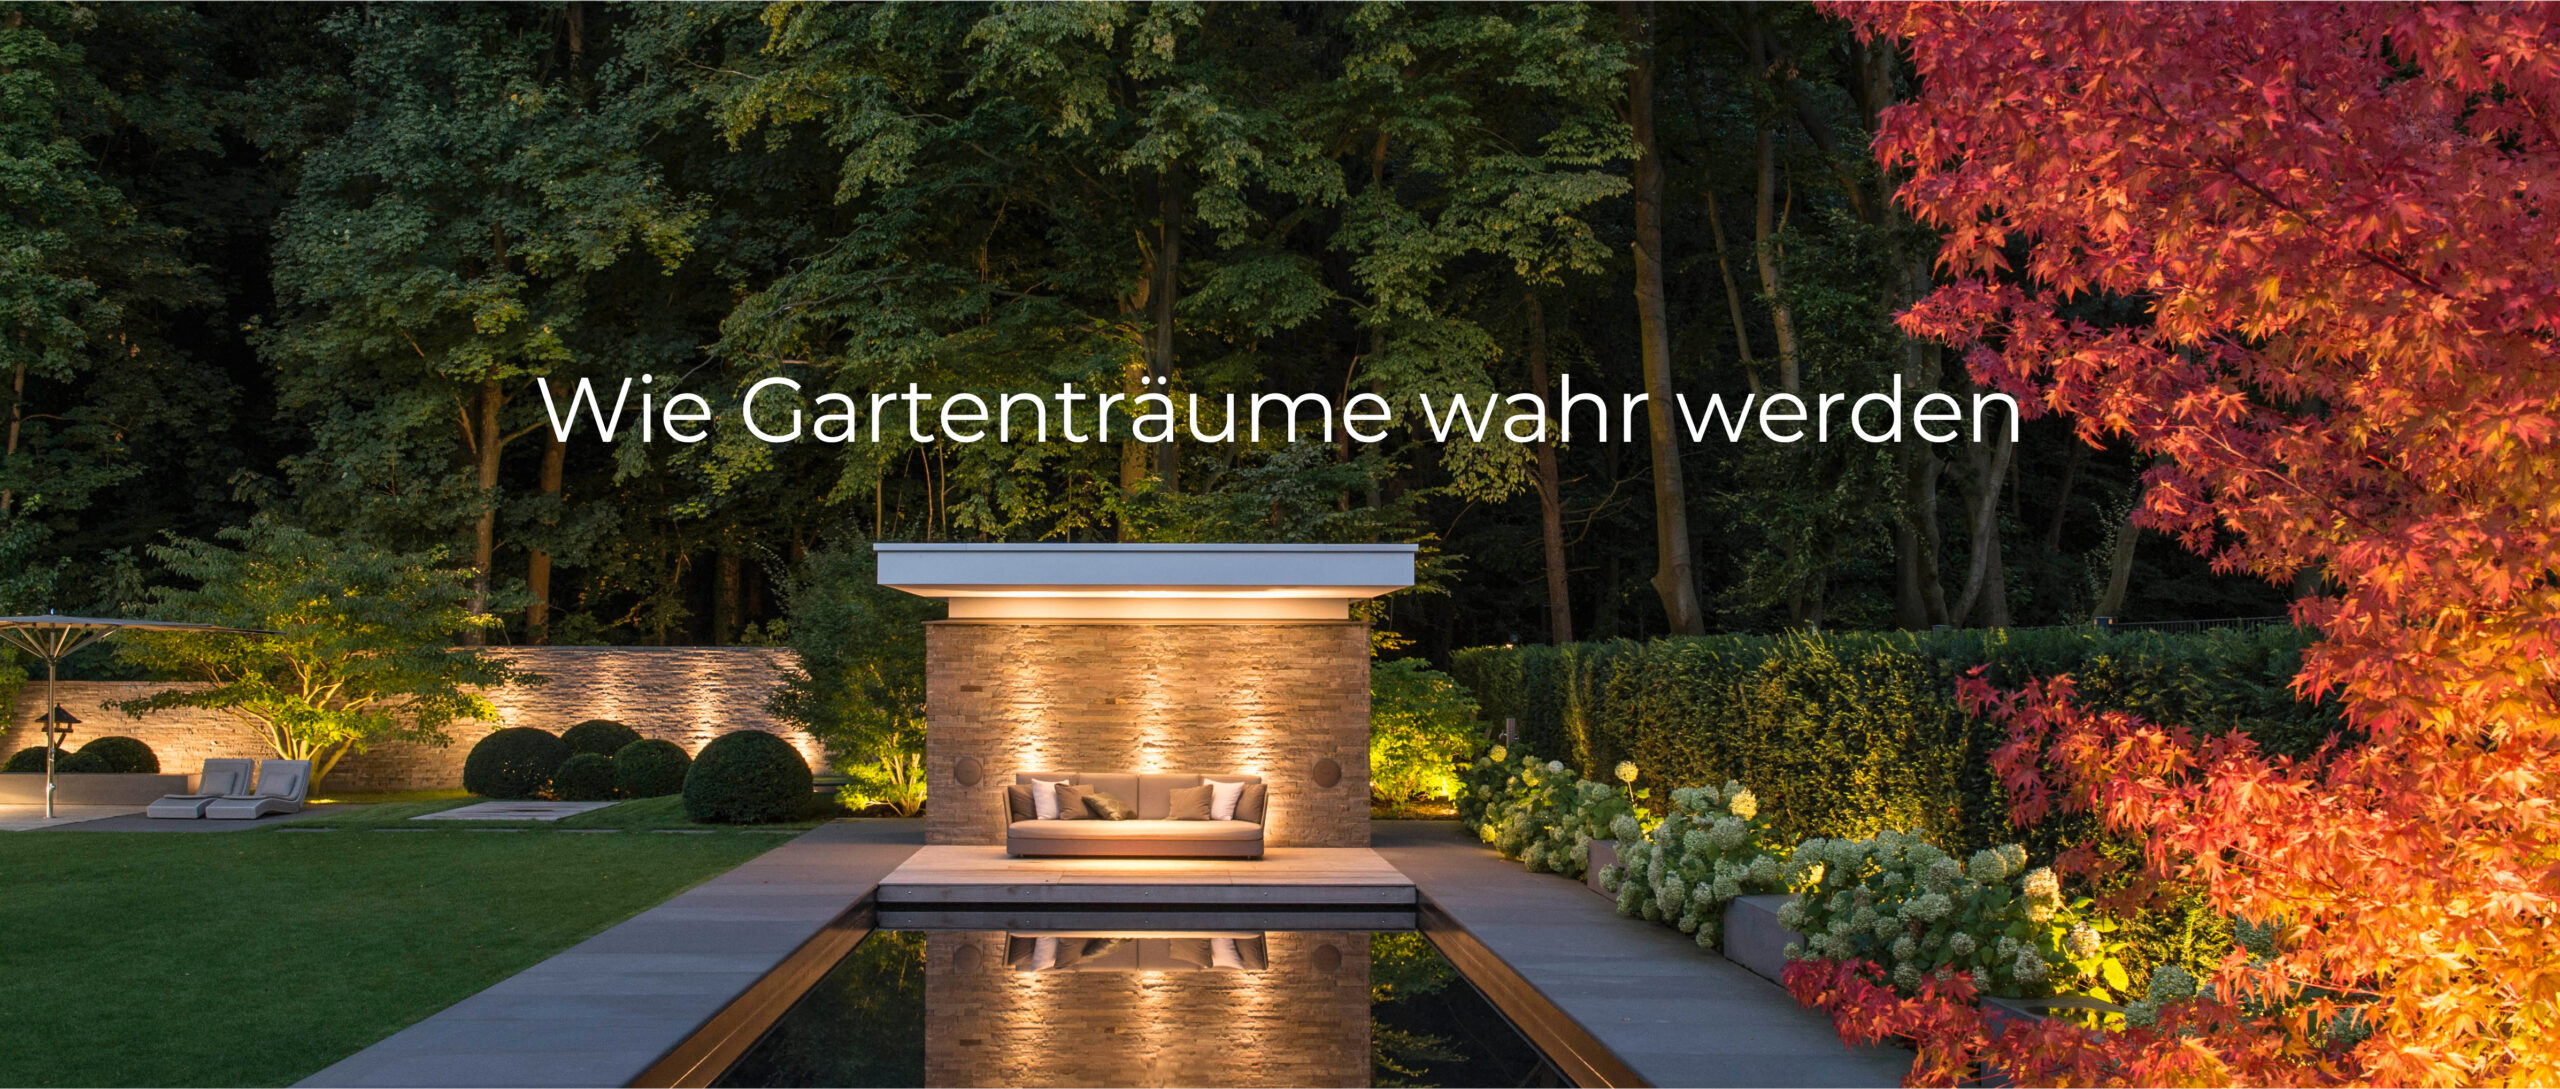 Modernes Gartendesign Garten Köln 02